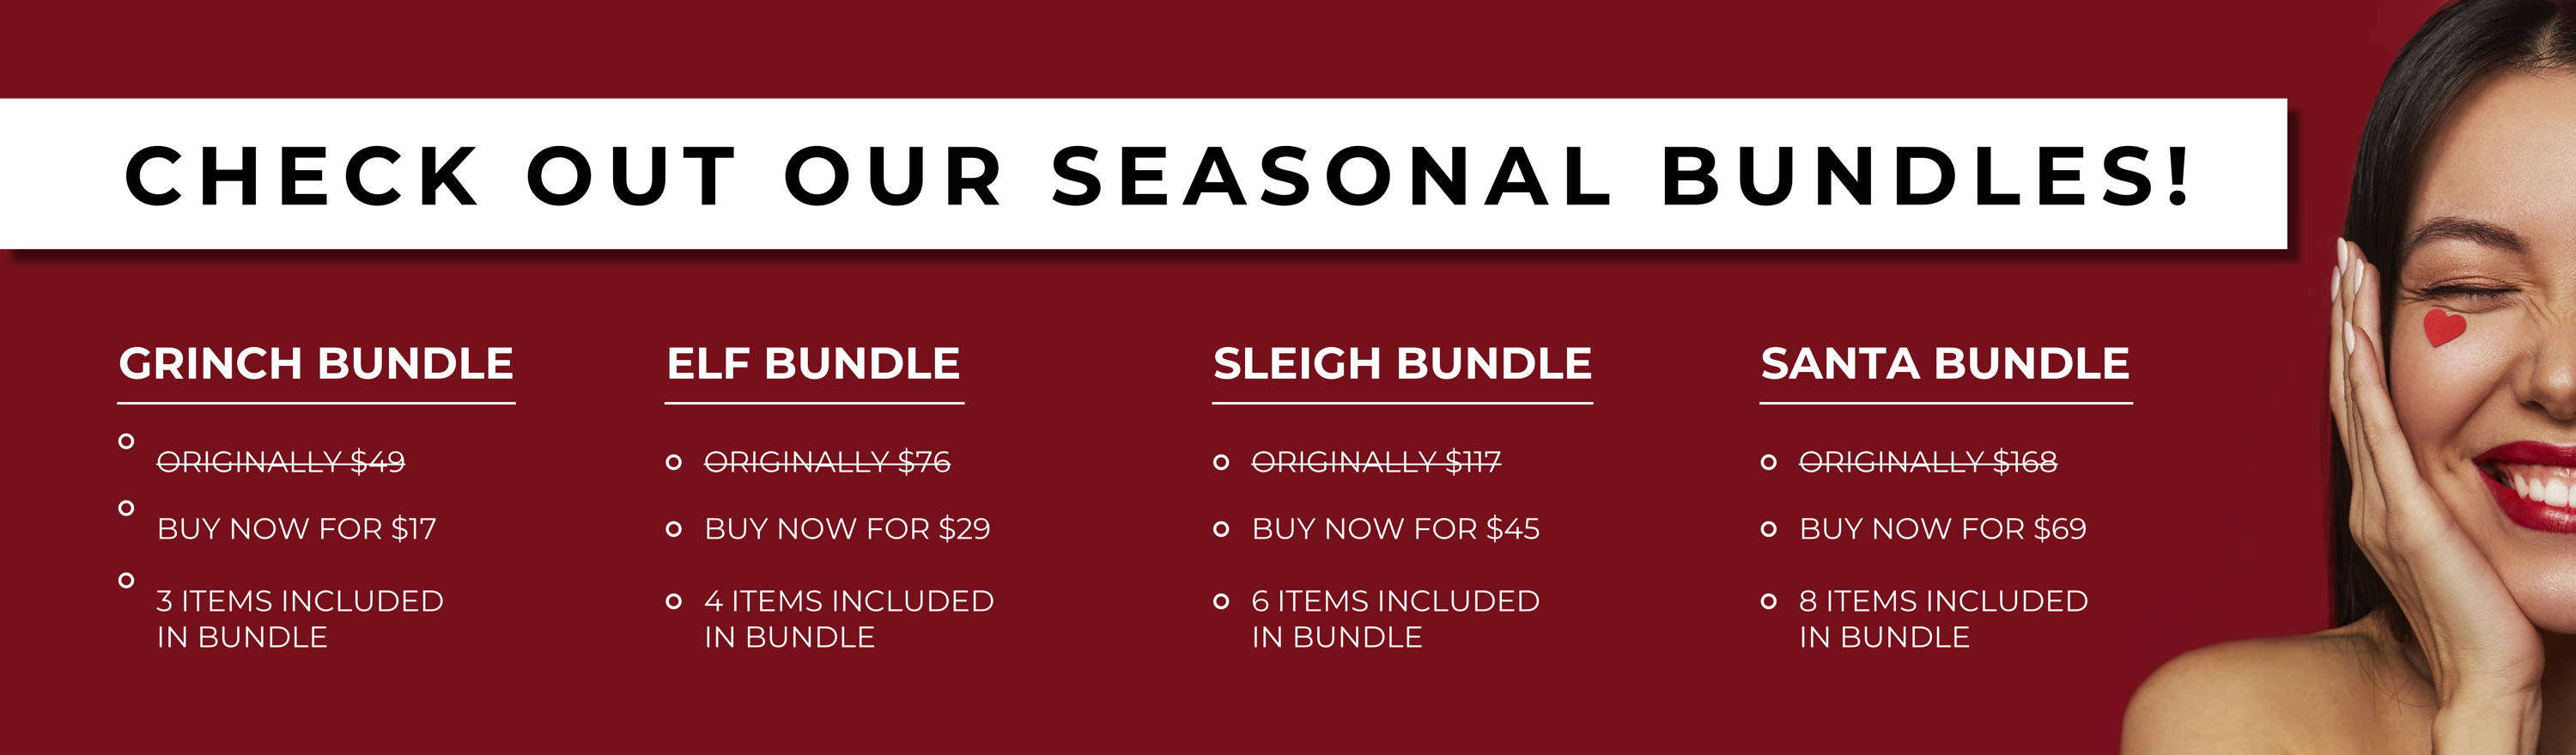 Check out our seasonal bundles!